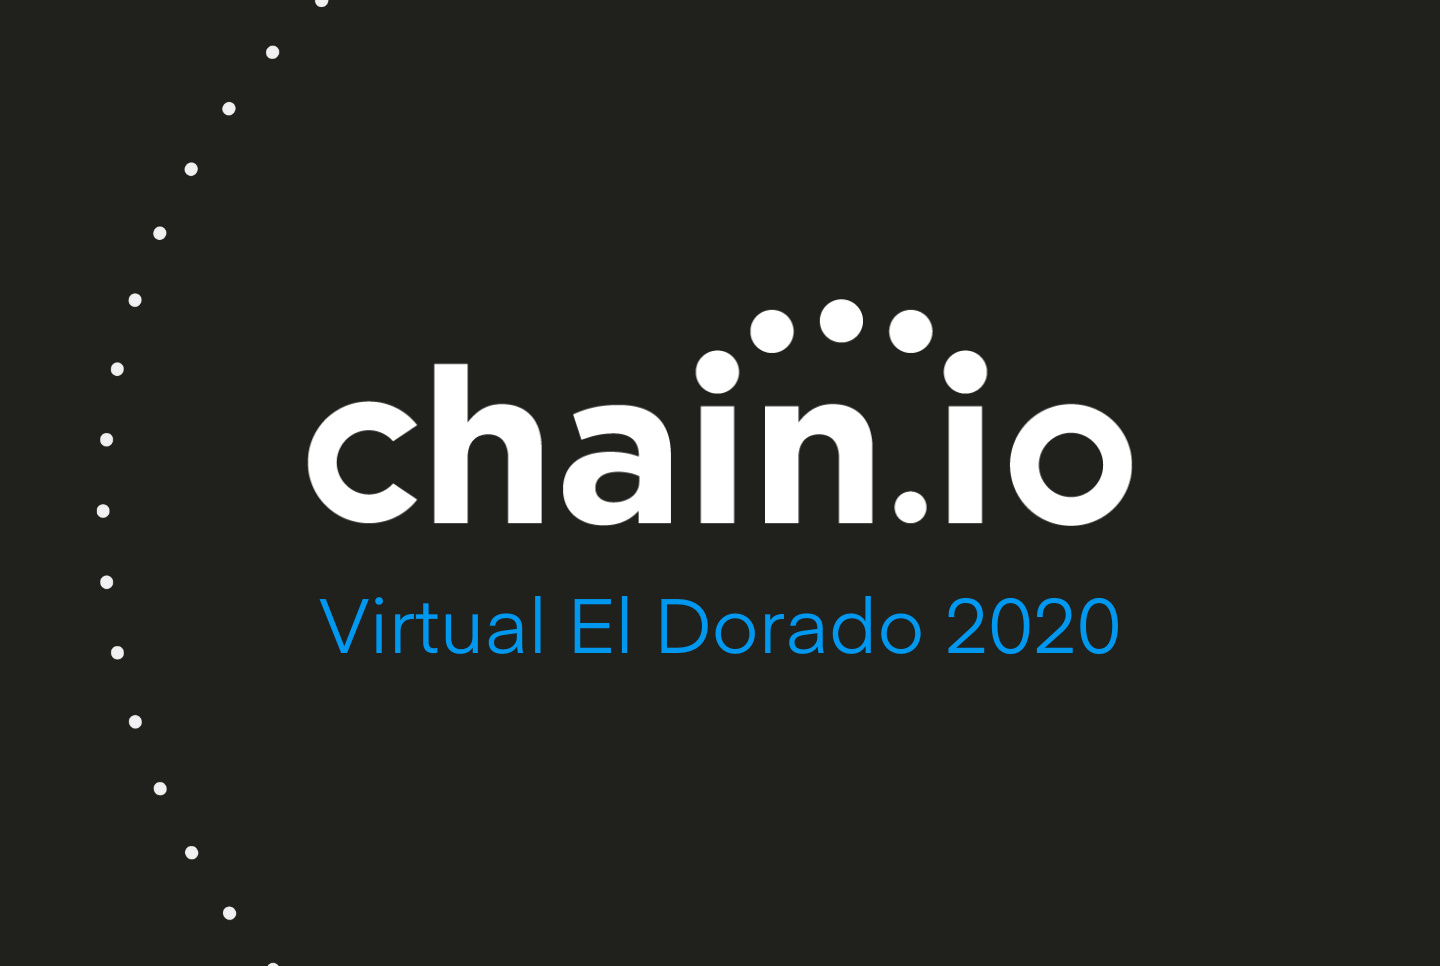  2020 Virtual El Dorado conference - Chain.io Logo on black background